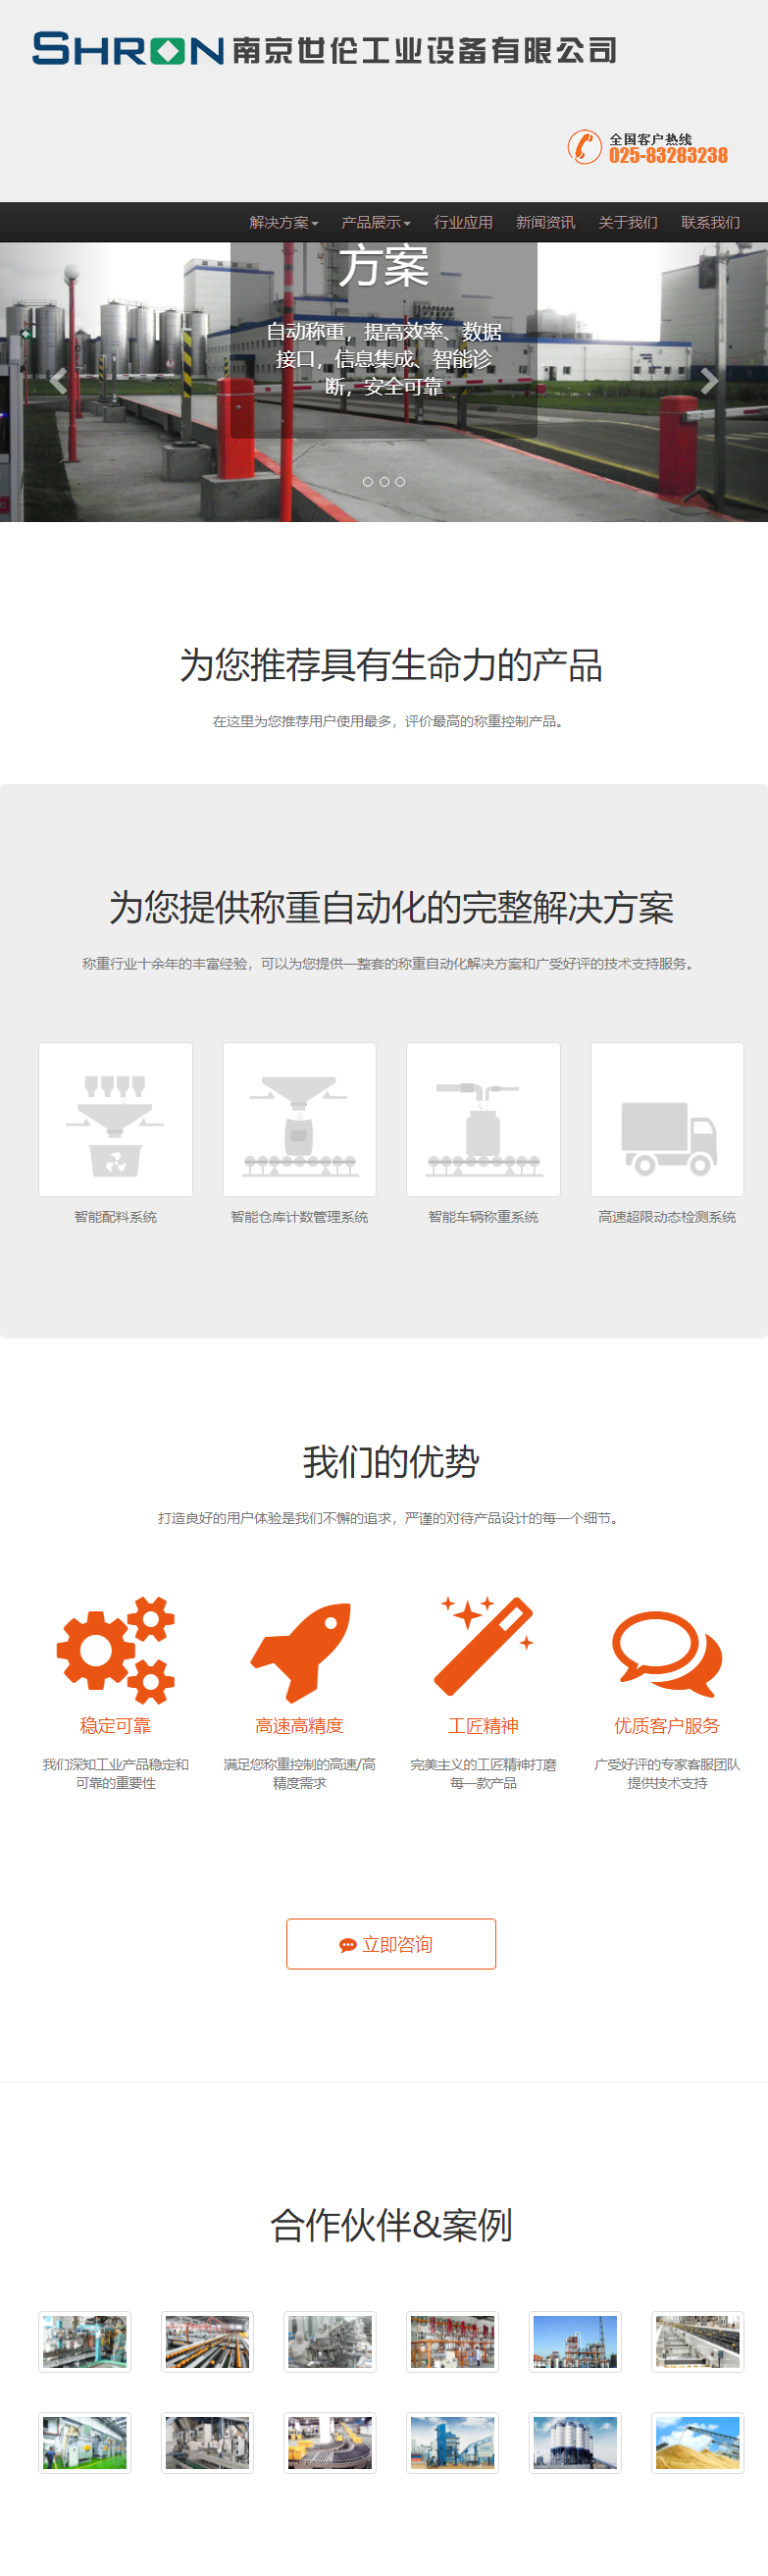 南京世伦工业设备有限公司网站案例